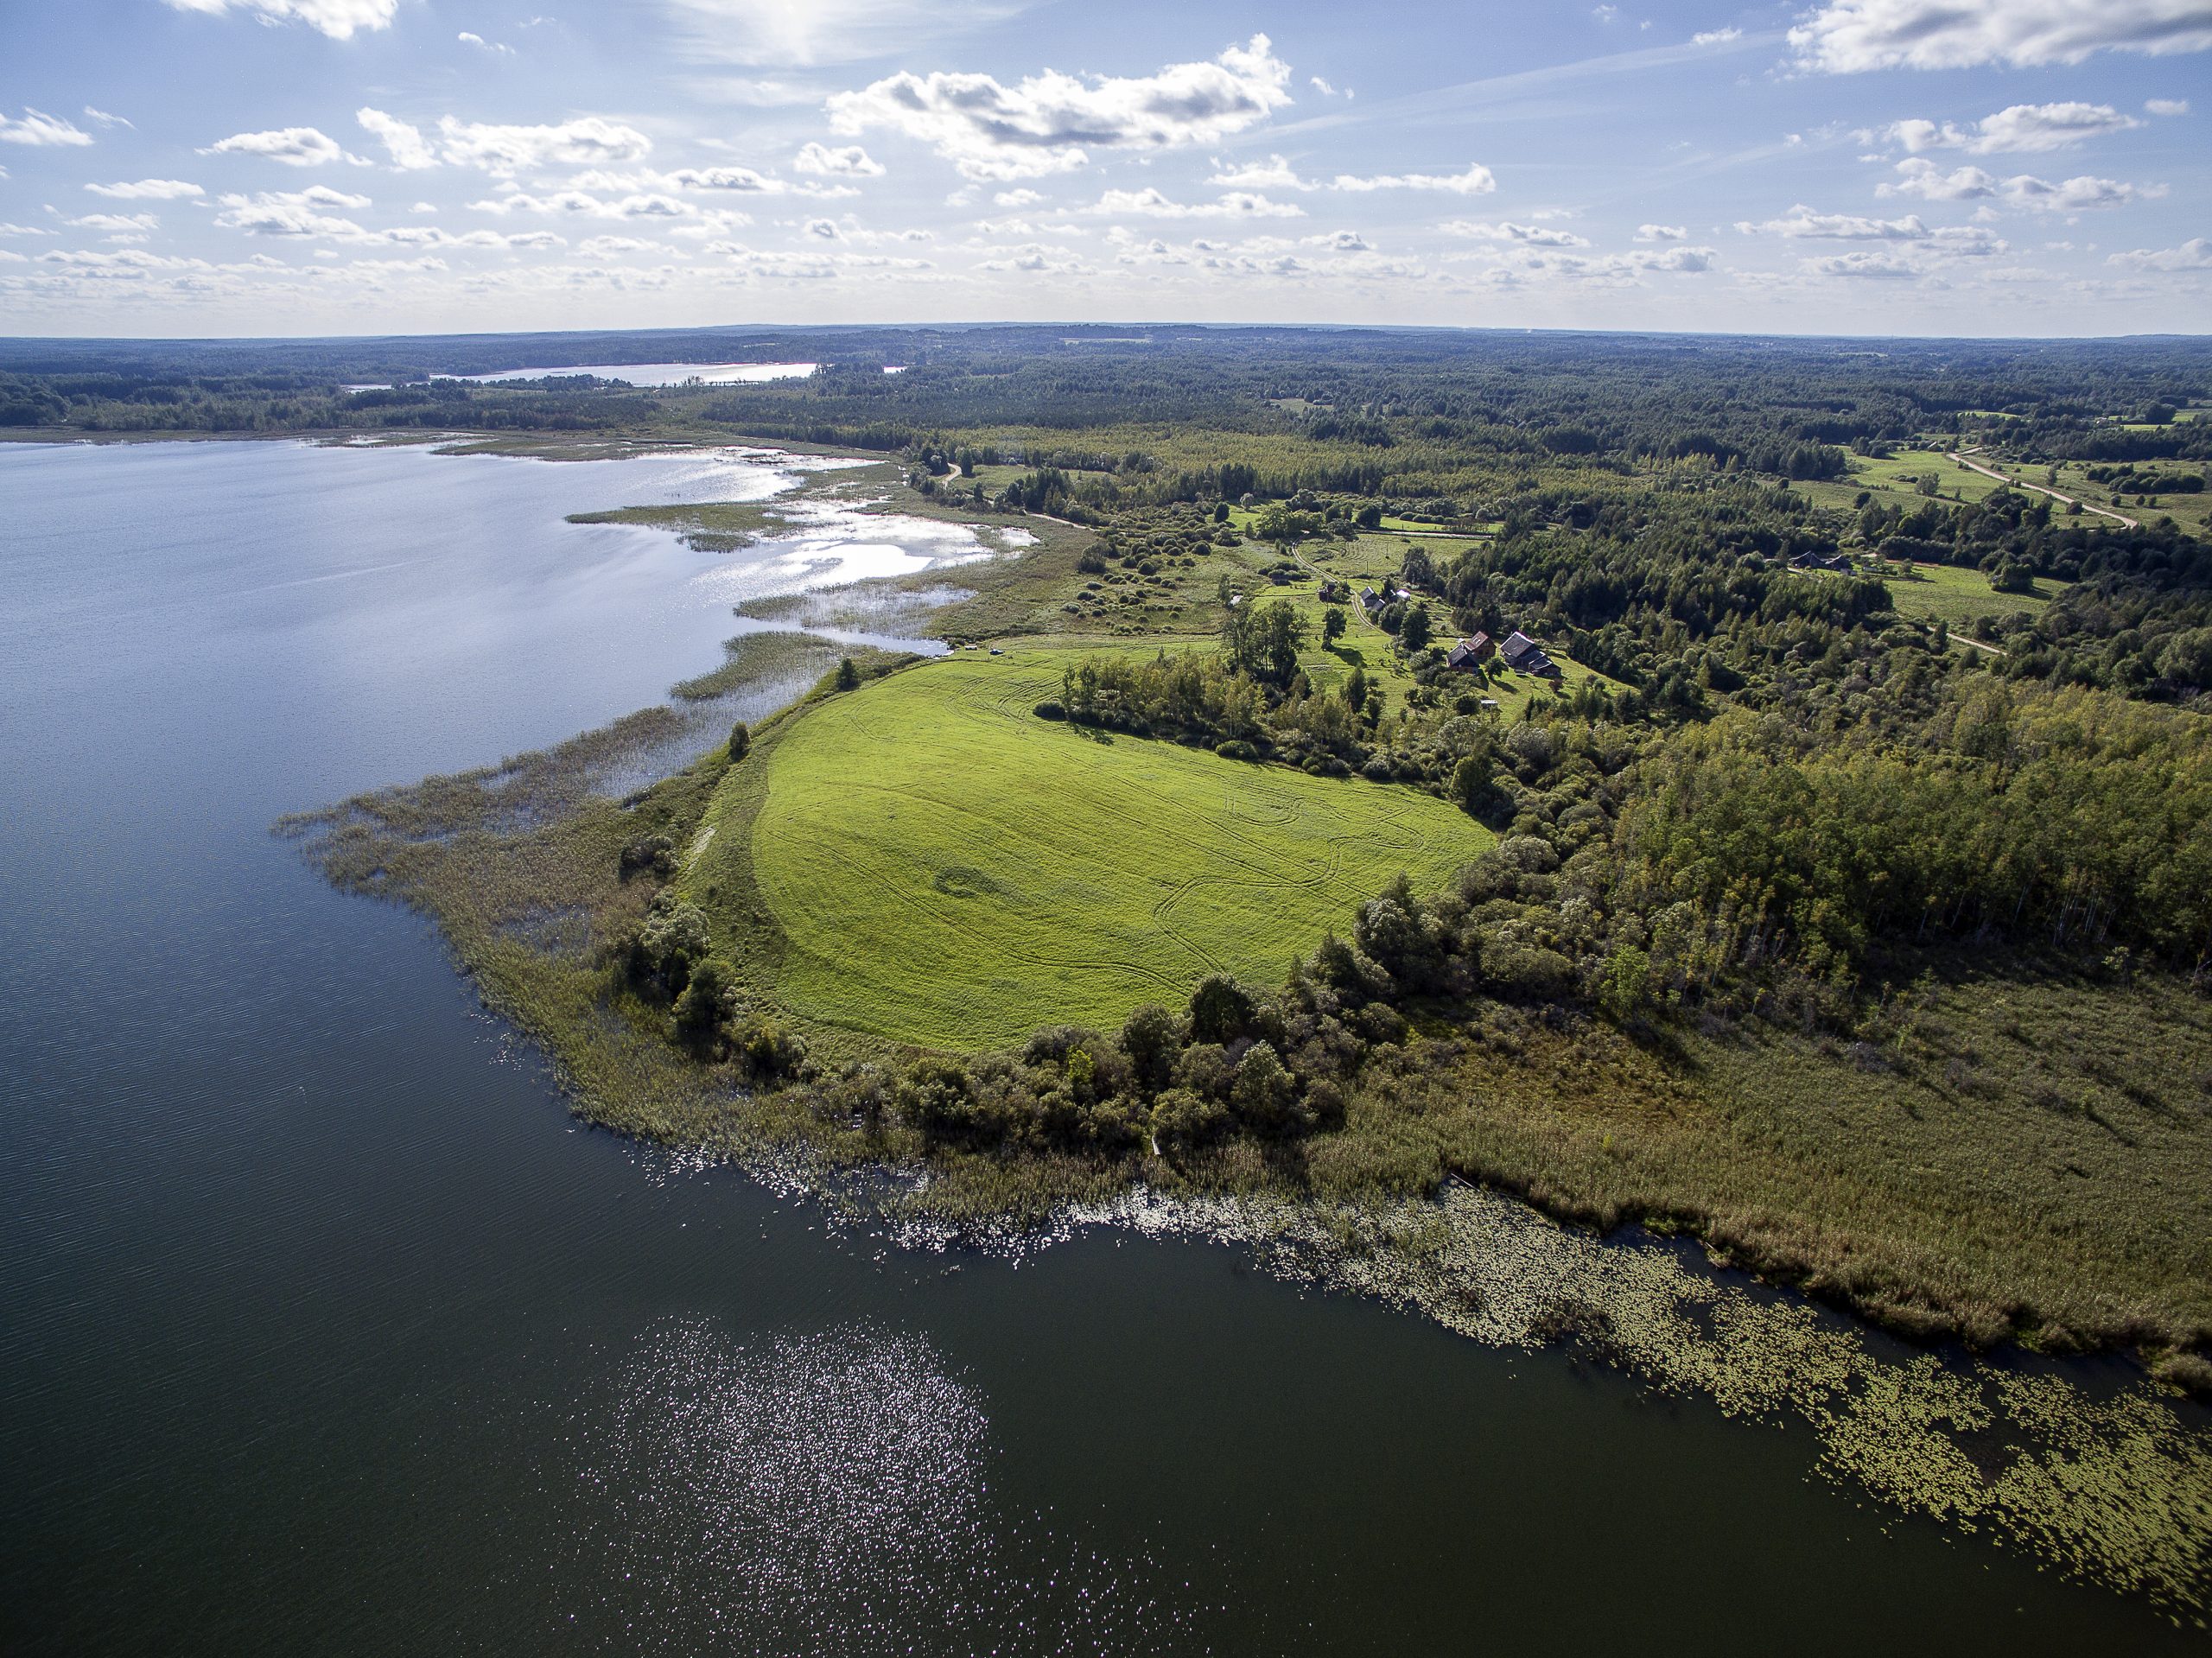 Lielākais nacionālais parks Latvijā ir Gaujas Nacionālais parks, kas aizņem 91 786 hektārus lielu platību. Kurš ir platības ziņā otrs lielākais nacionālais parks?